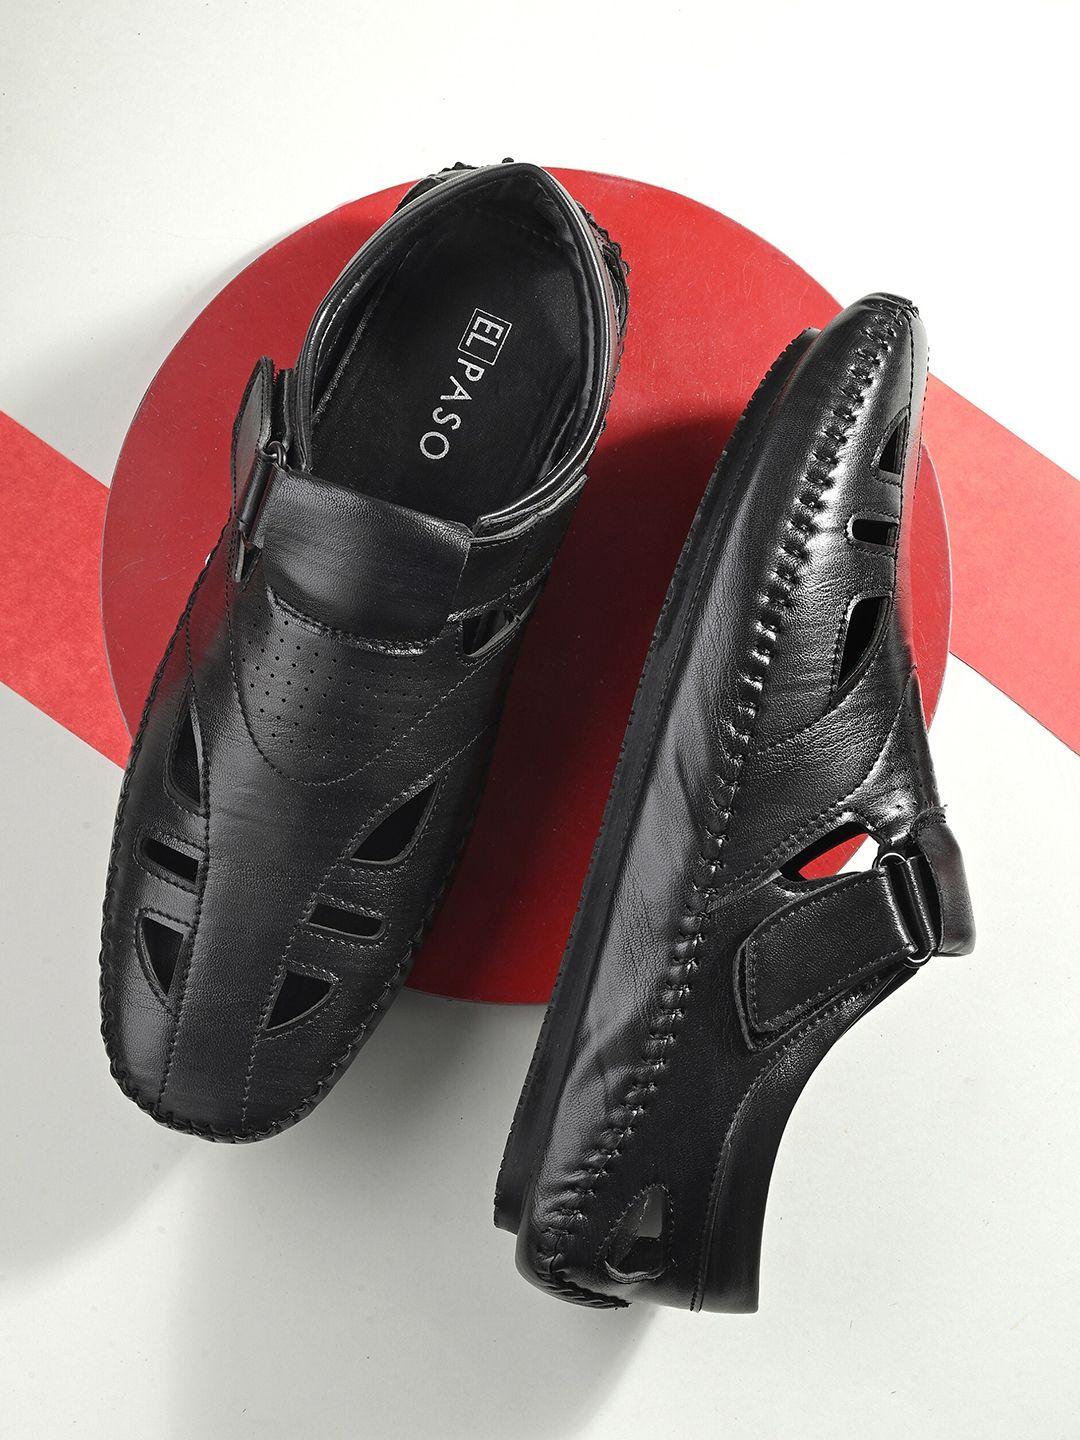 el-paso-men-textured-shoe-style-sandals